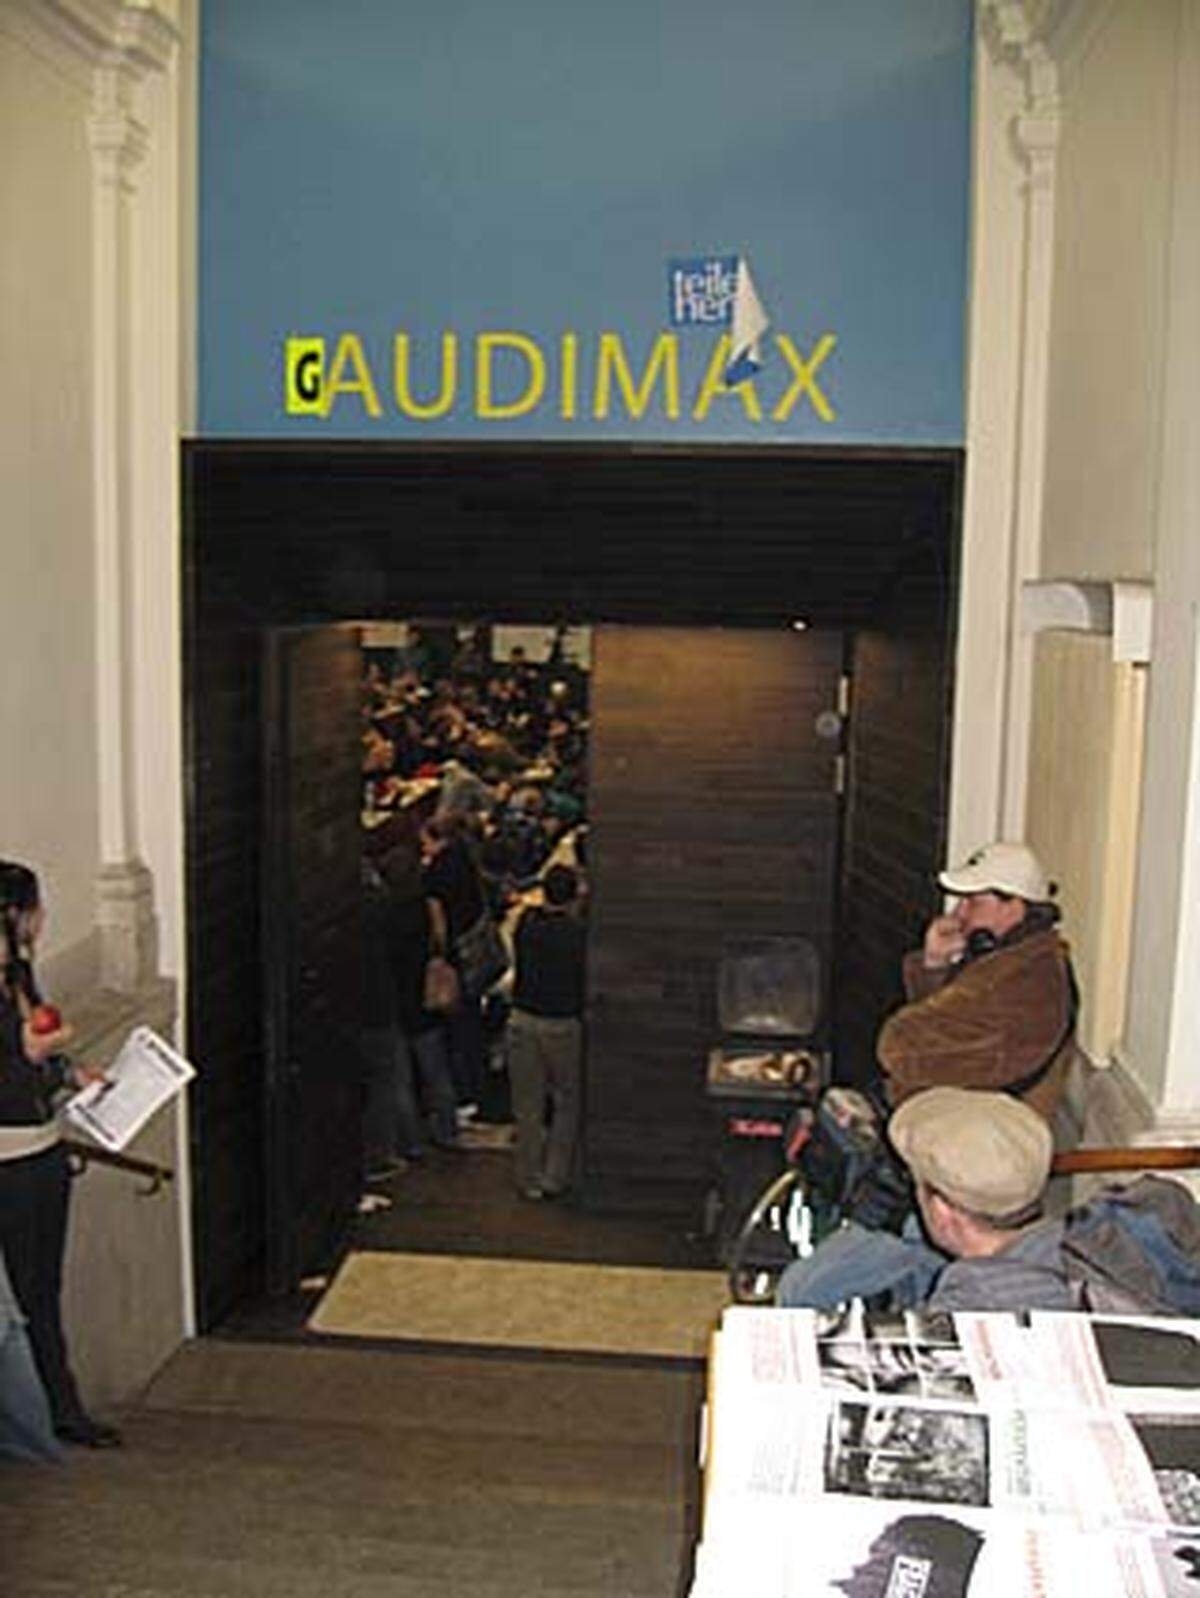 Wie lang die Besetzung des kurzfristig zum "Gaudimax" umbenannten Hörsaals dauern würde, war noch nicht vorhersehbar.